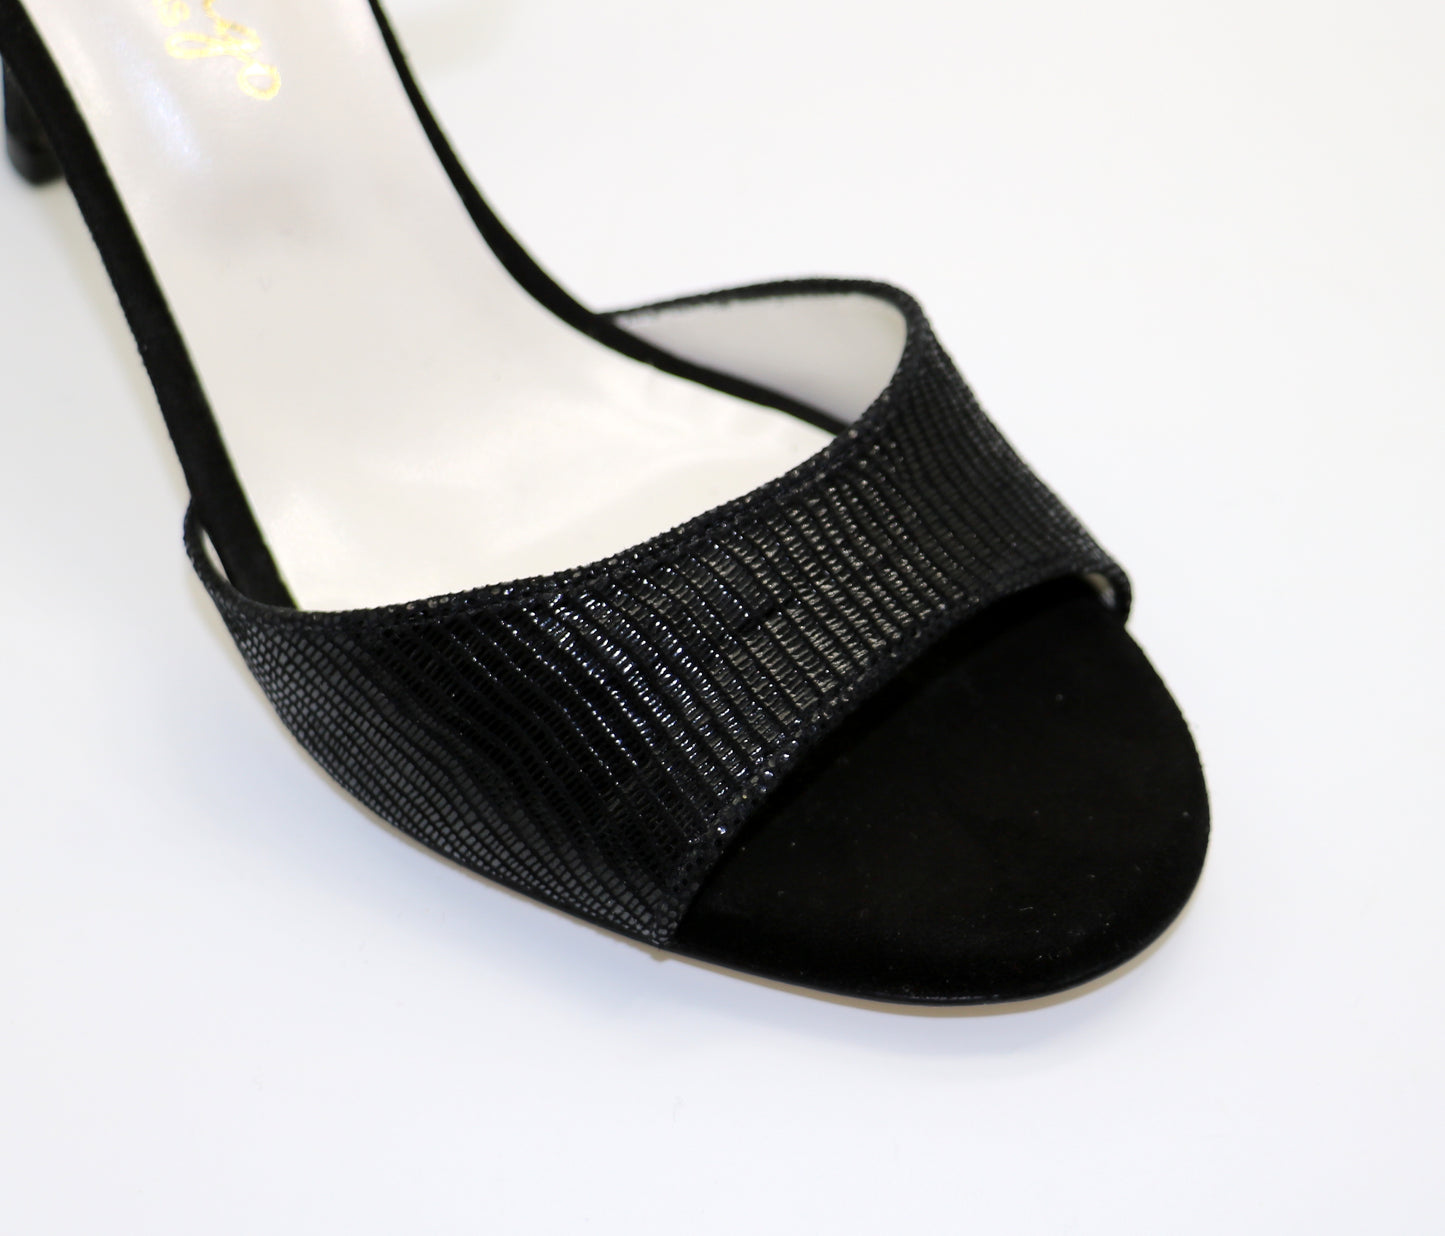 Flor Black leather snake-like heels 7cm